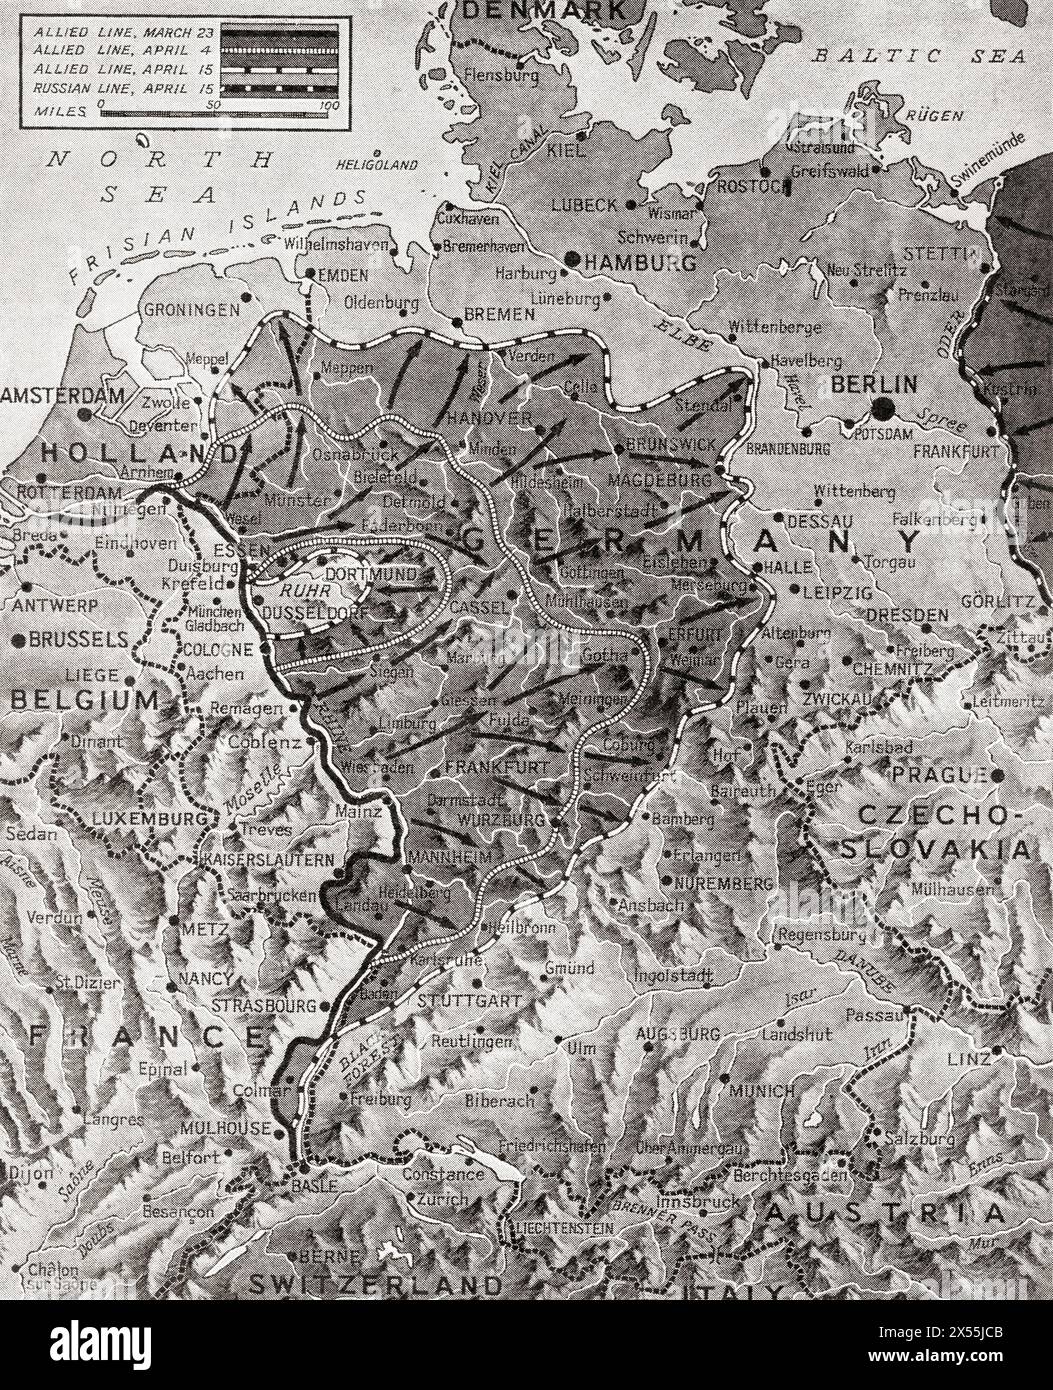 Karte, die die Bewegung der angloamerikanischen Truppen in Richtung des Reichszentrums und der tschechoslowakischen Grenze und den britischen Vormarsch zeigt, Holland abzuschneiden, April 1945 während des Zweiten Weltkriegs. Aus dem Krieg in Bildern, sechstes Jahr. Stockfoto